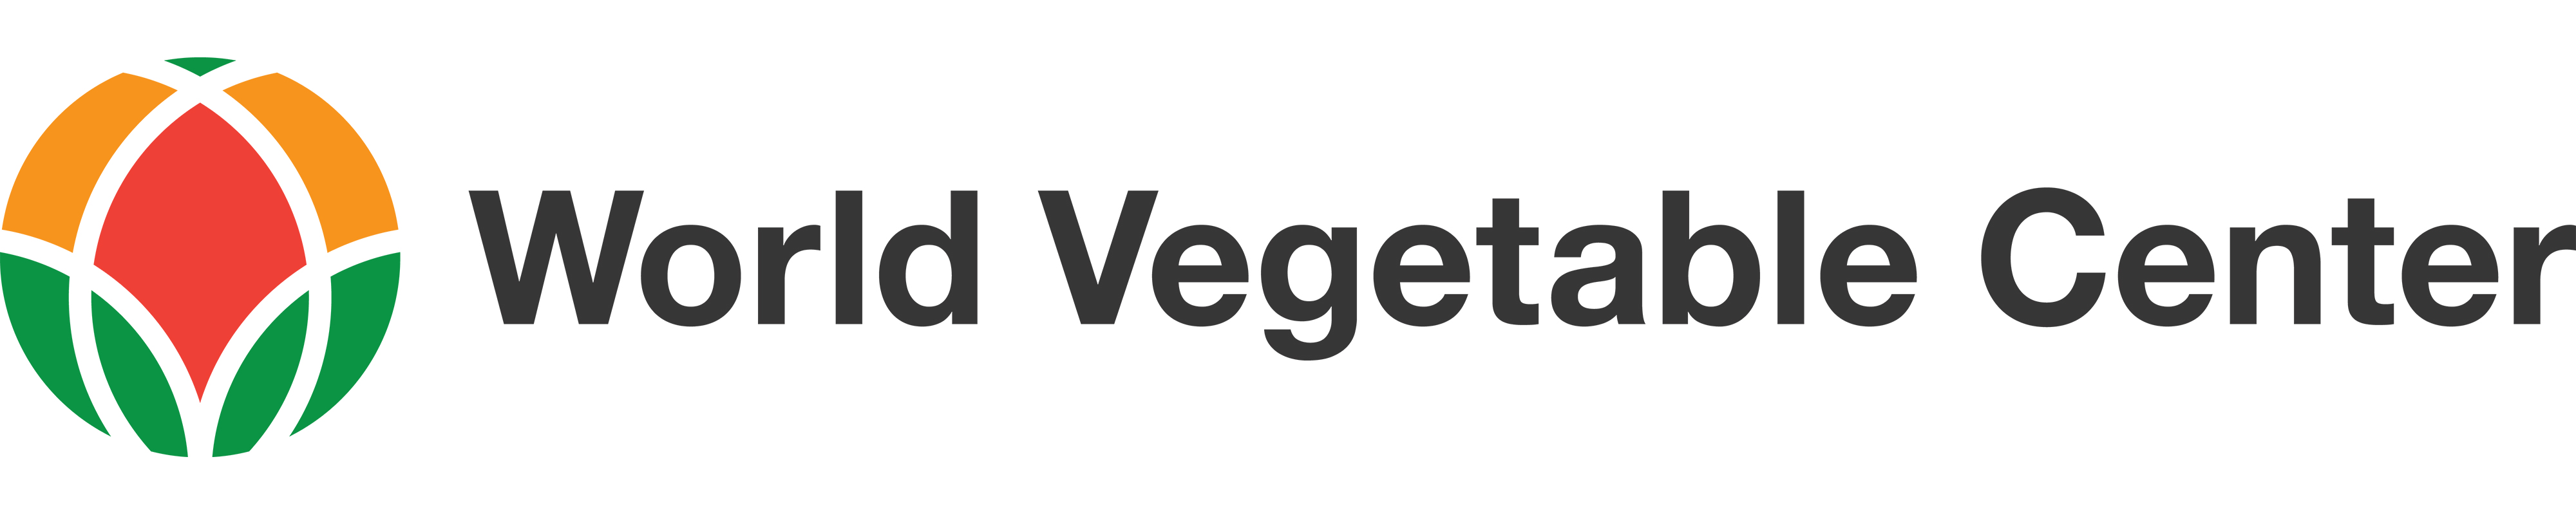 World Vegetable Center logo